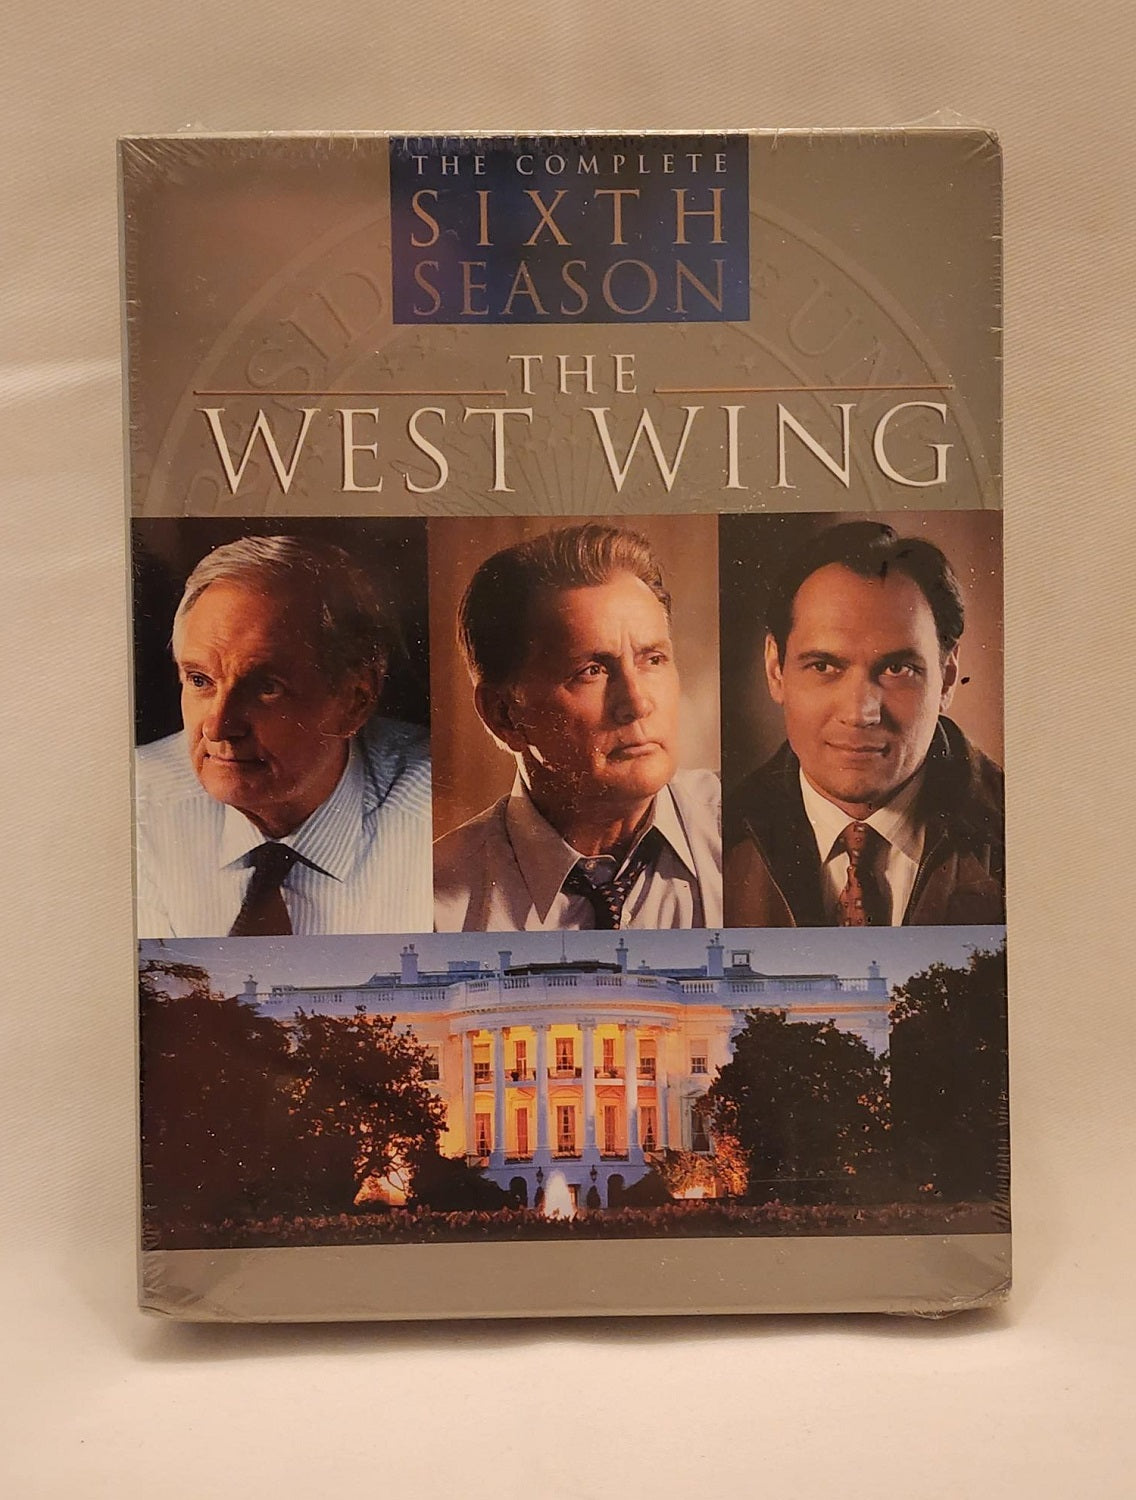 The West Wing - Serie de televisión de drama político